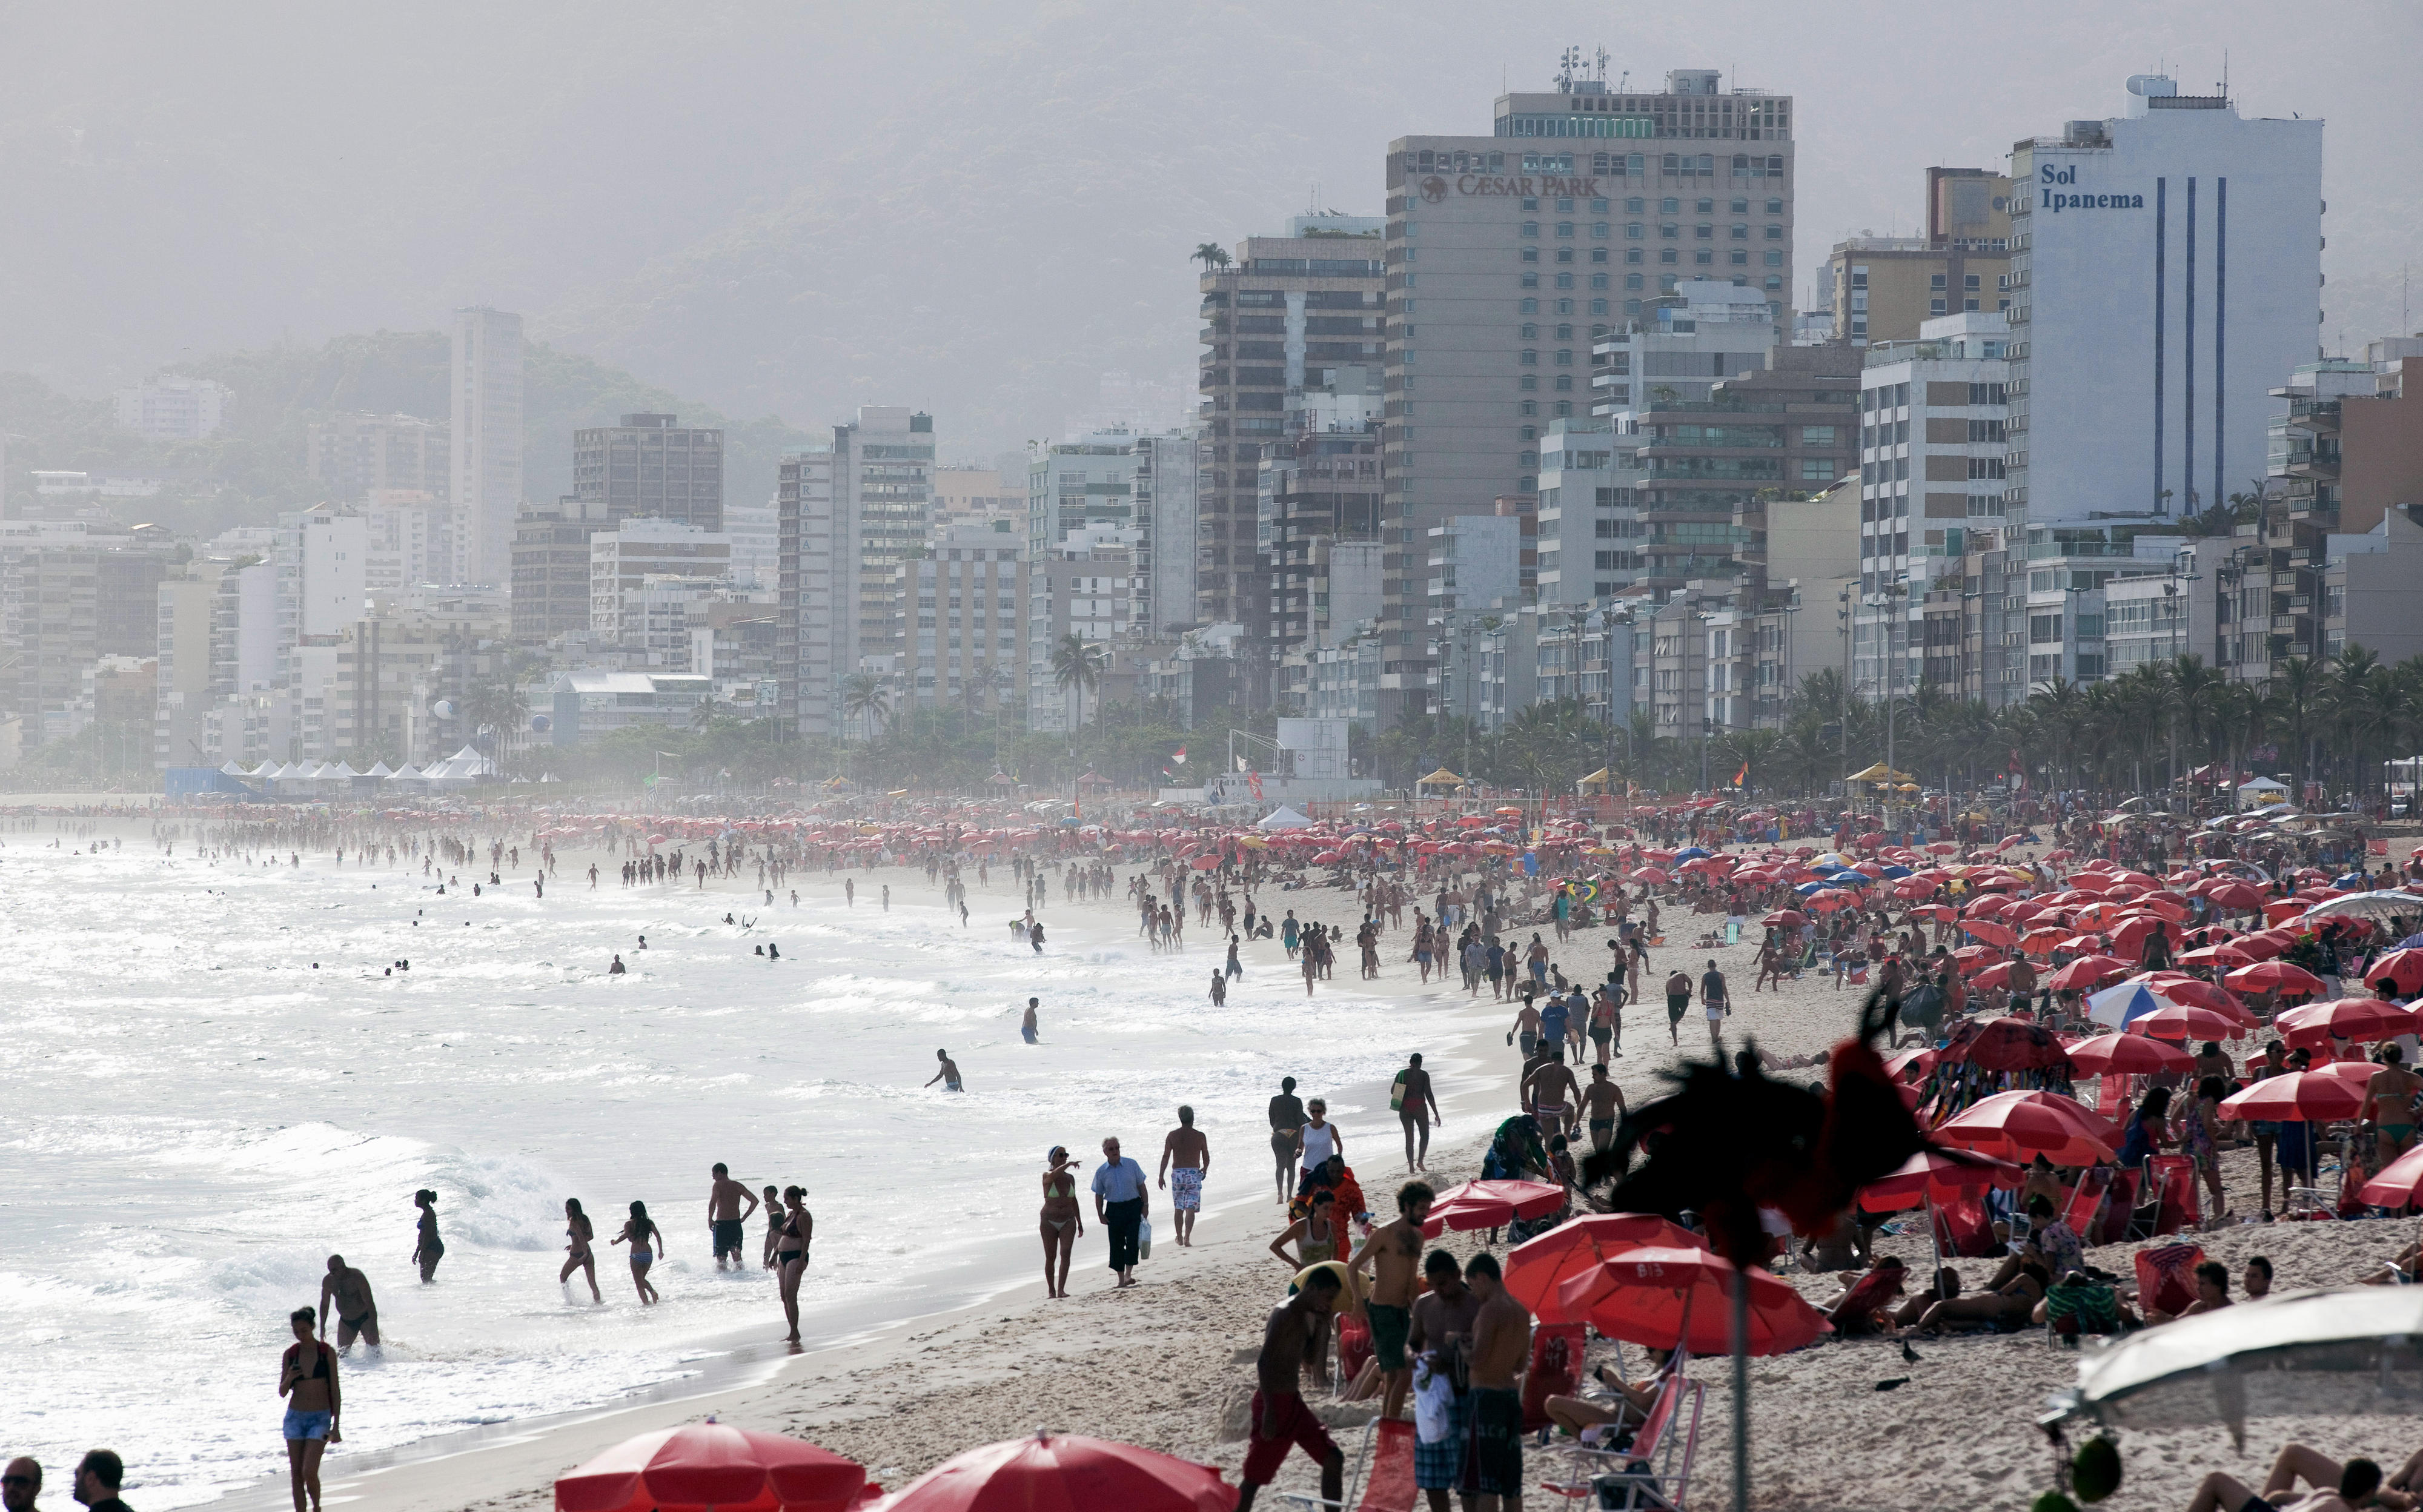 Ipanema beach in Rio de Janeiro